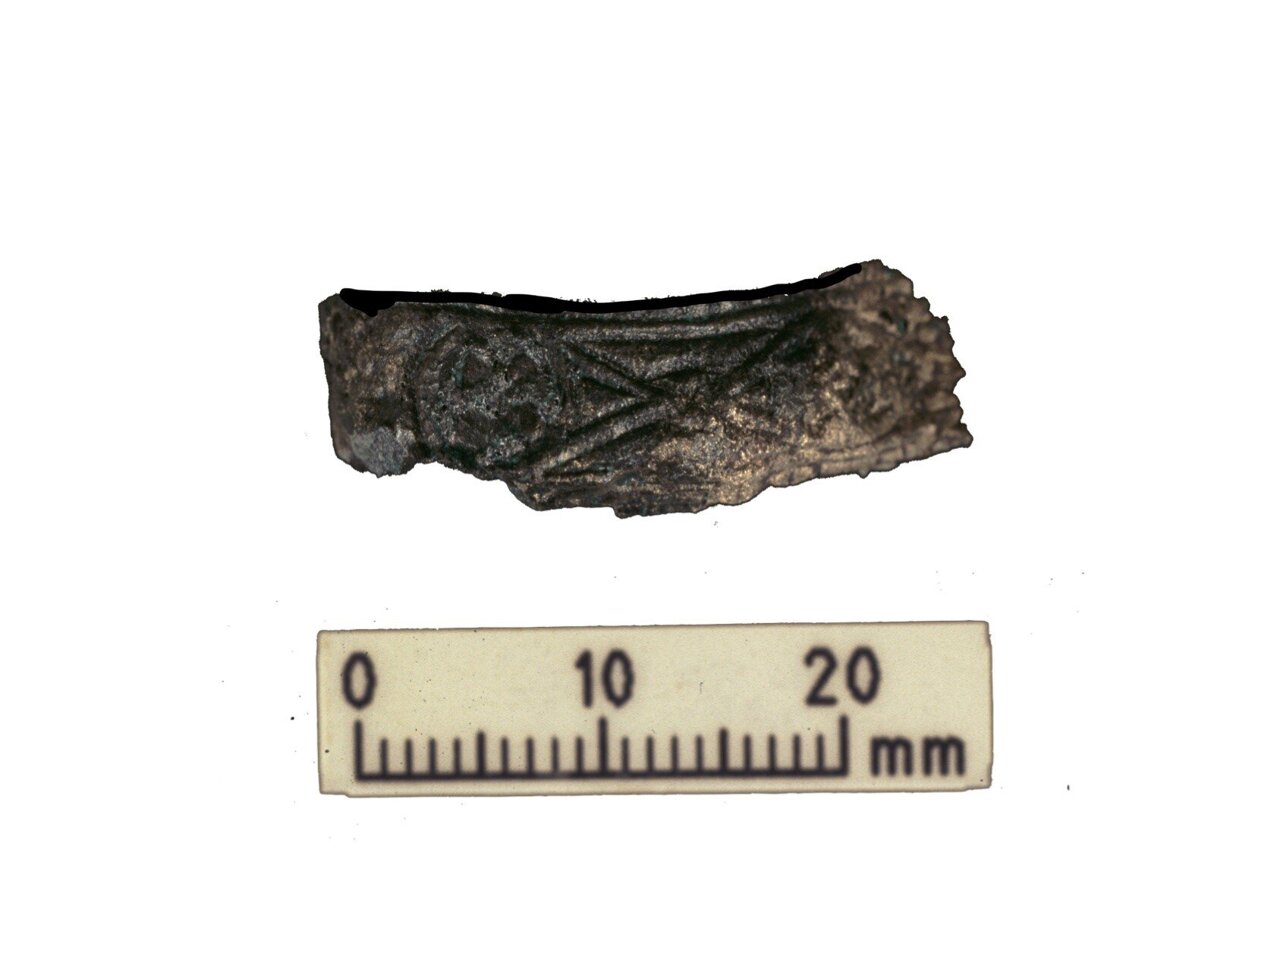 Okrašen ščitnik za ročaj iz meča vikinškega bojevnika. Meč je bil najden v istem grobu kot človeški in živalski ostanki, analizirani med najnovejšo raziskavo.